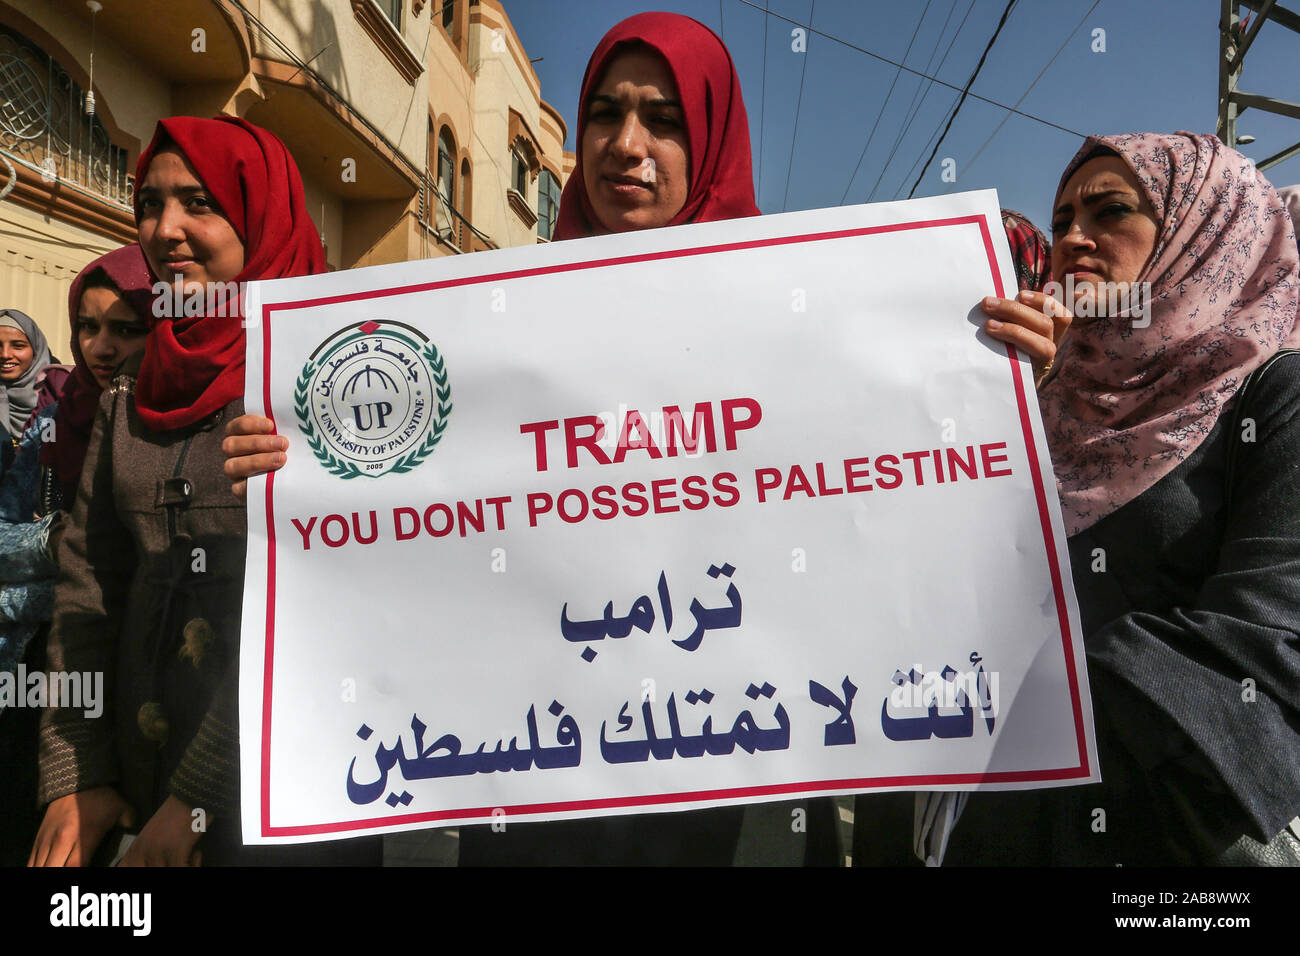 Palästinensische Demonstration gegen die Politik der USA auf den israelischen Siedlungen in den palästinensischen Gebieten, im Gazastreifen, am 26.November 2019. Stockfoto